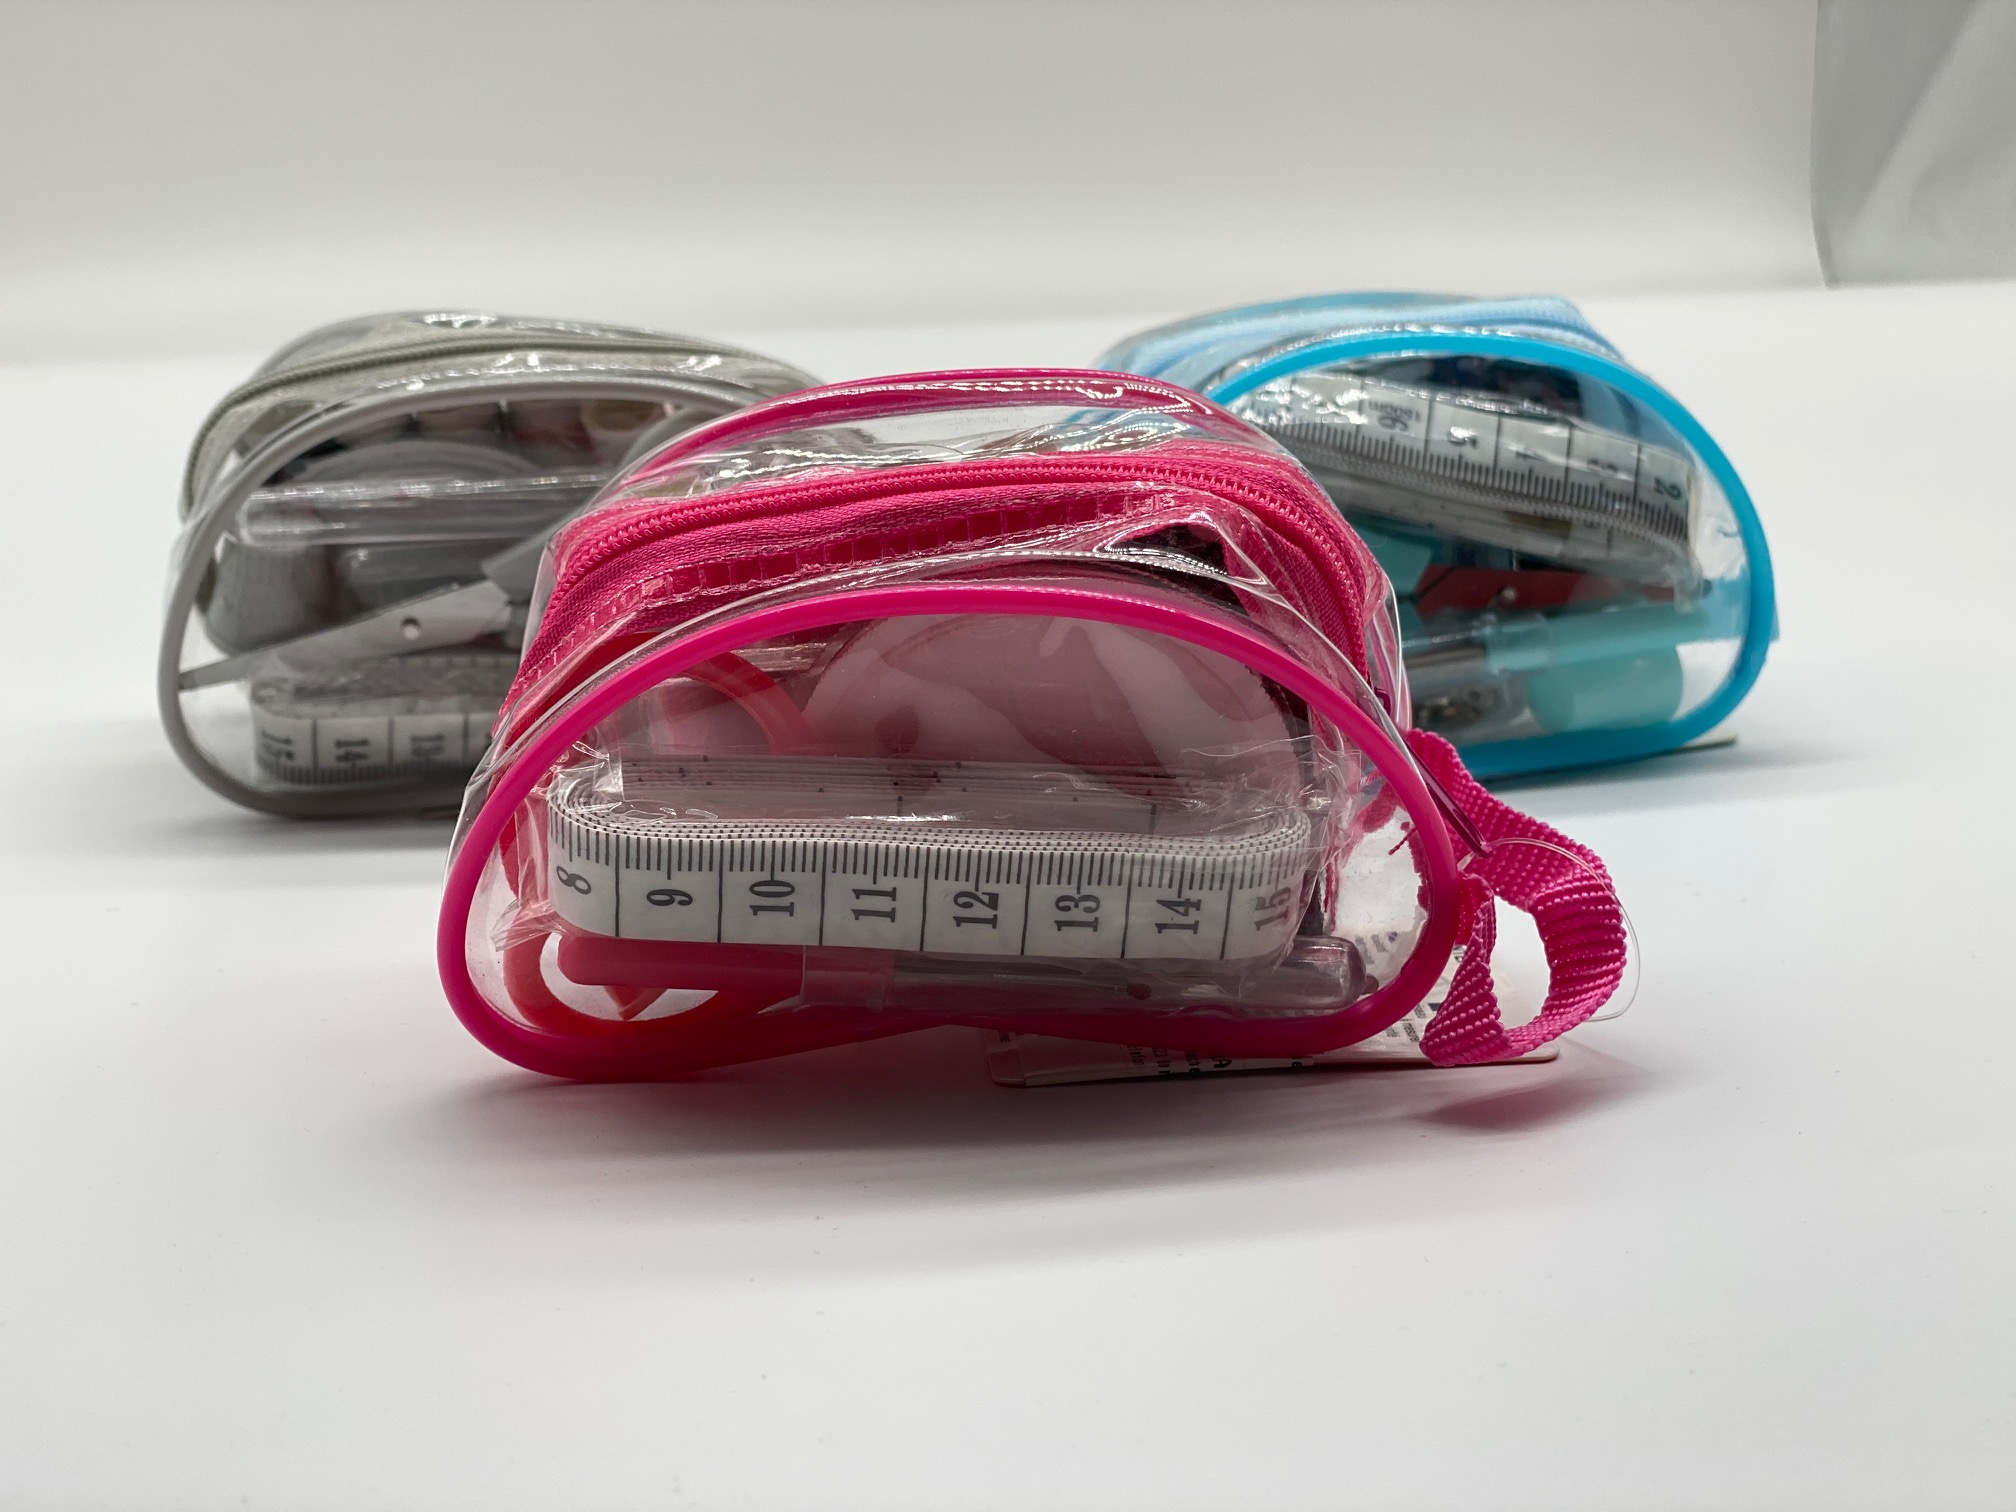 Reise-Nähset Sewing Kit Transparent Pink